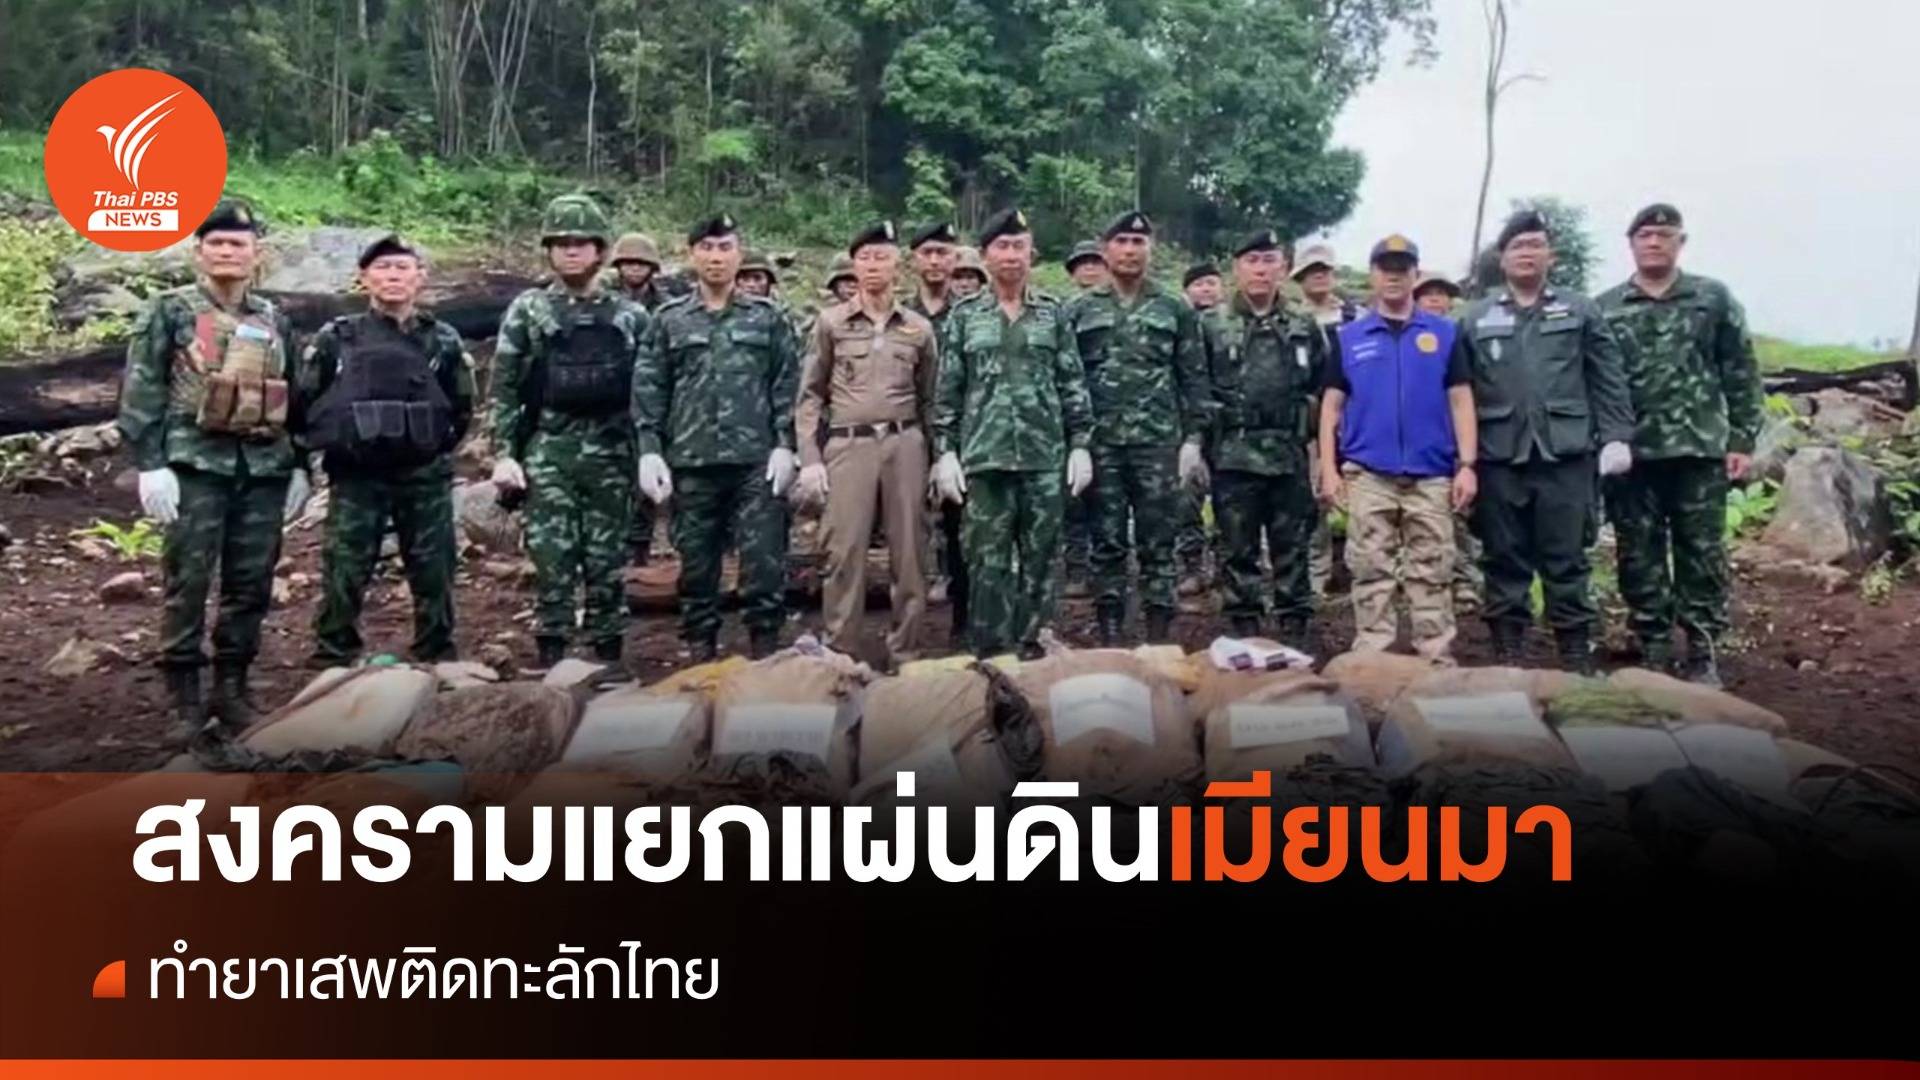 สงครามแยกแผ่นดินเมียนมา ทำยาเสพติดทะลักไทย